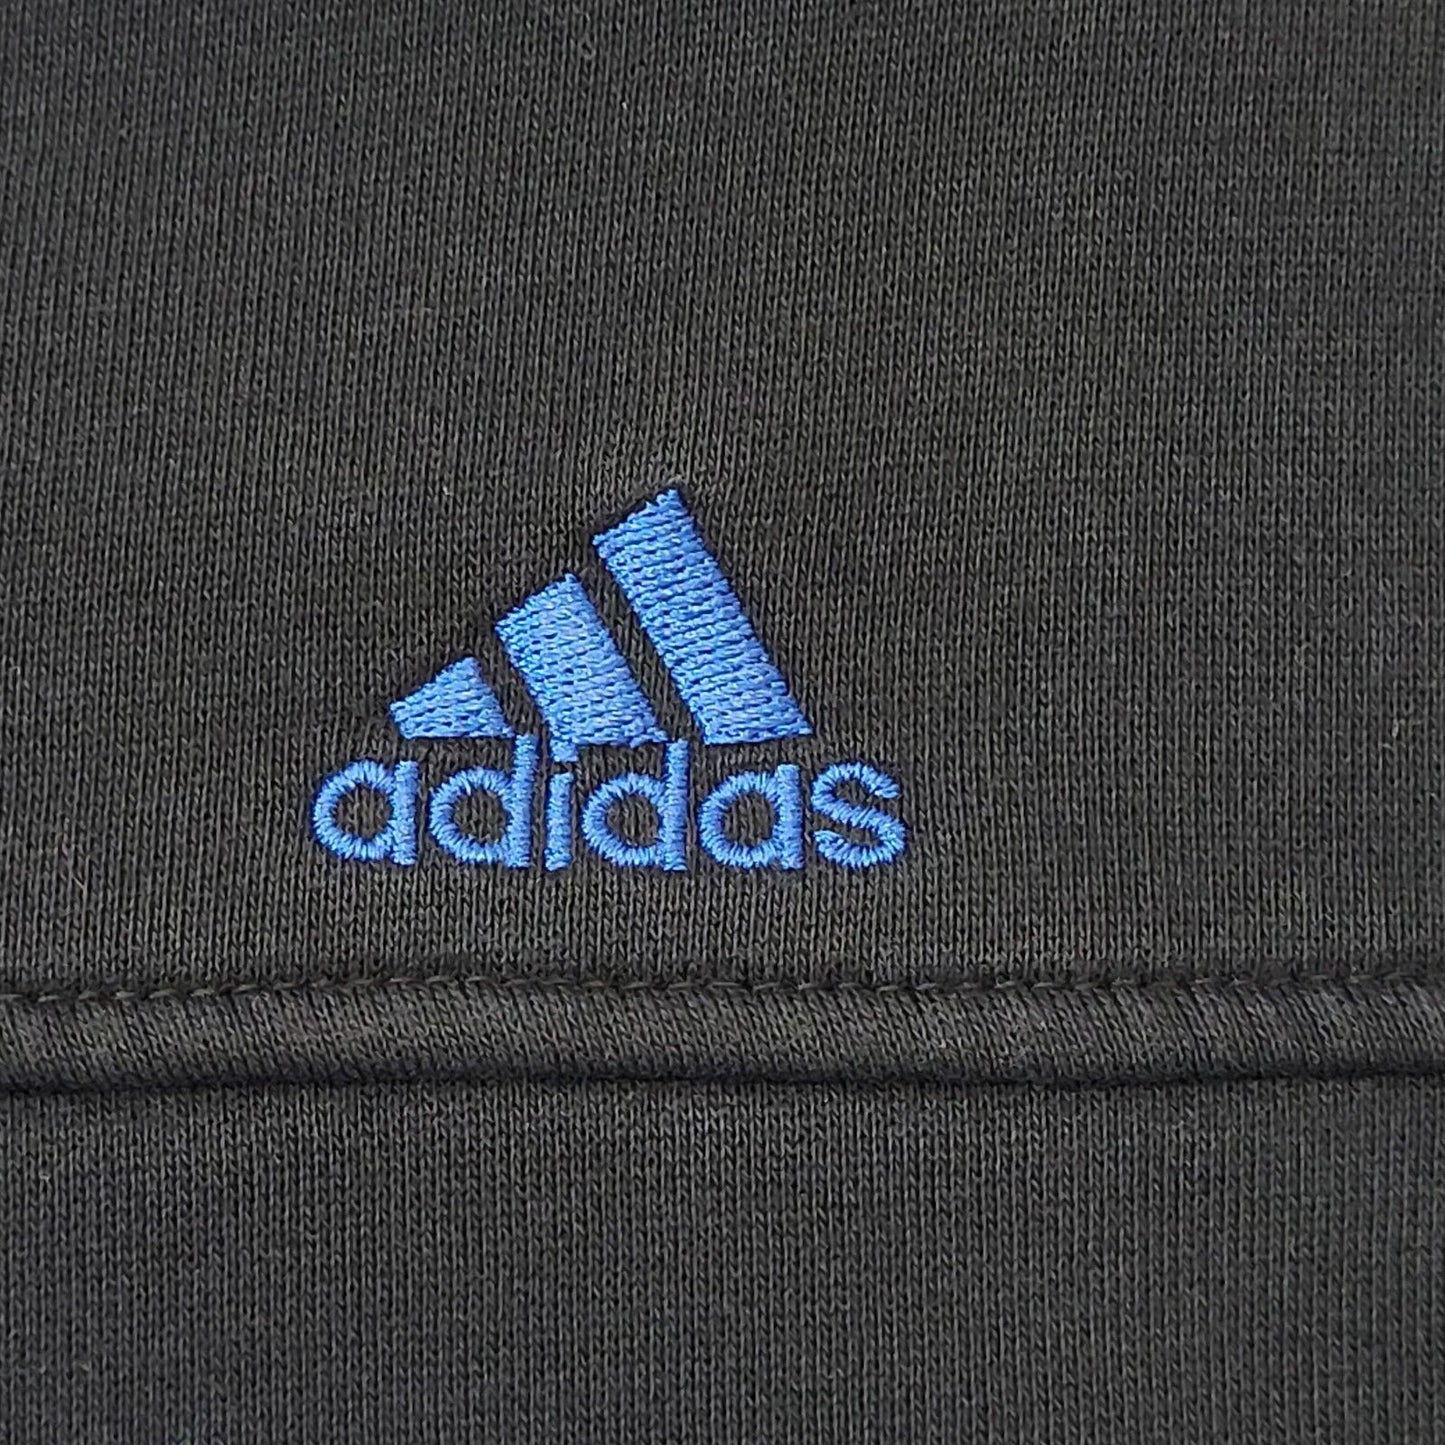 Adidas Sweatshirt (2XL)